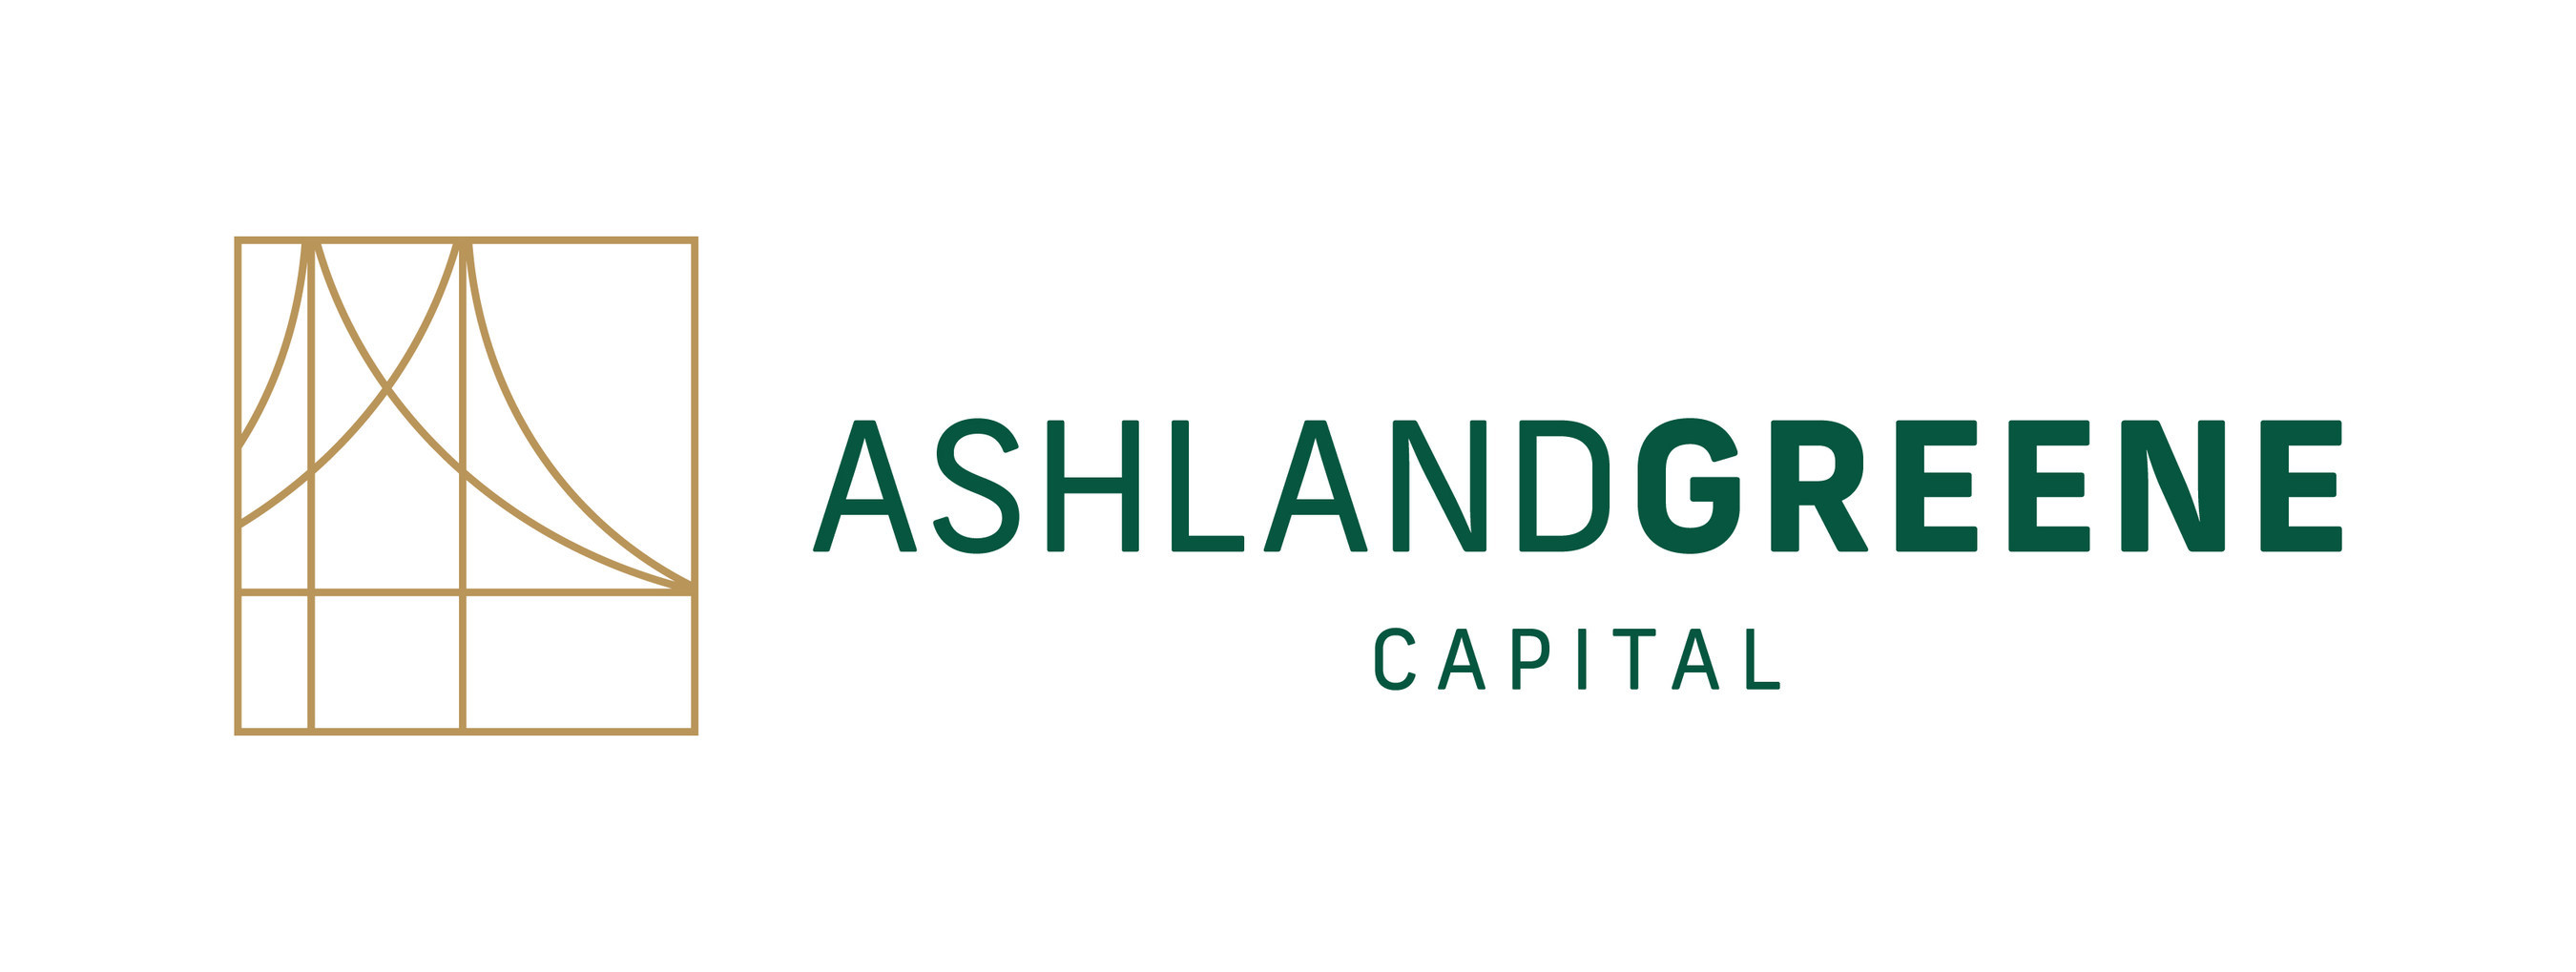 Ashland Greene Capital logo (PRNewsfoto/Ashland Greene Capital)